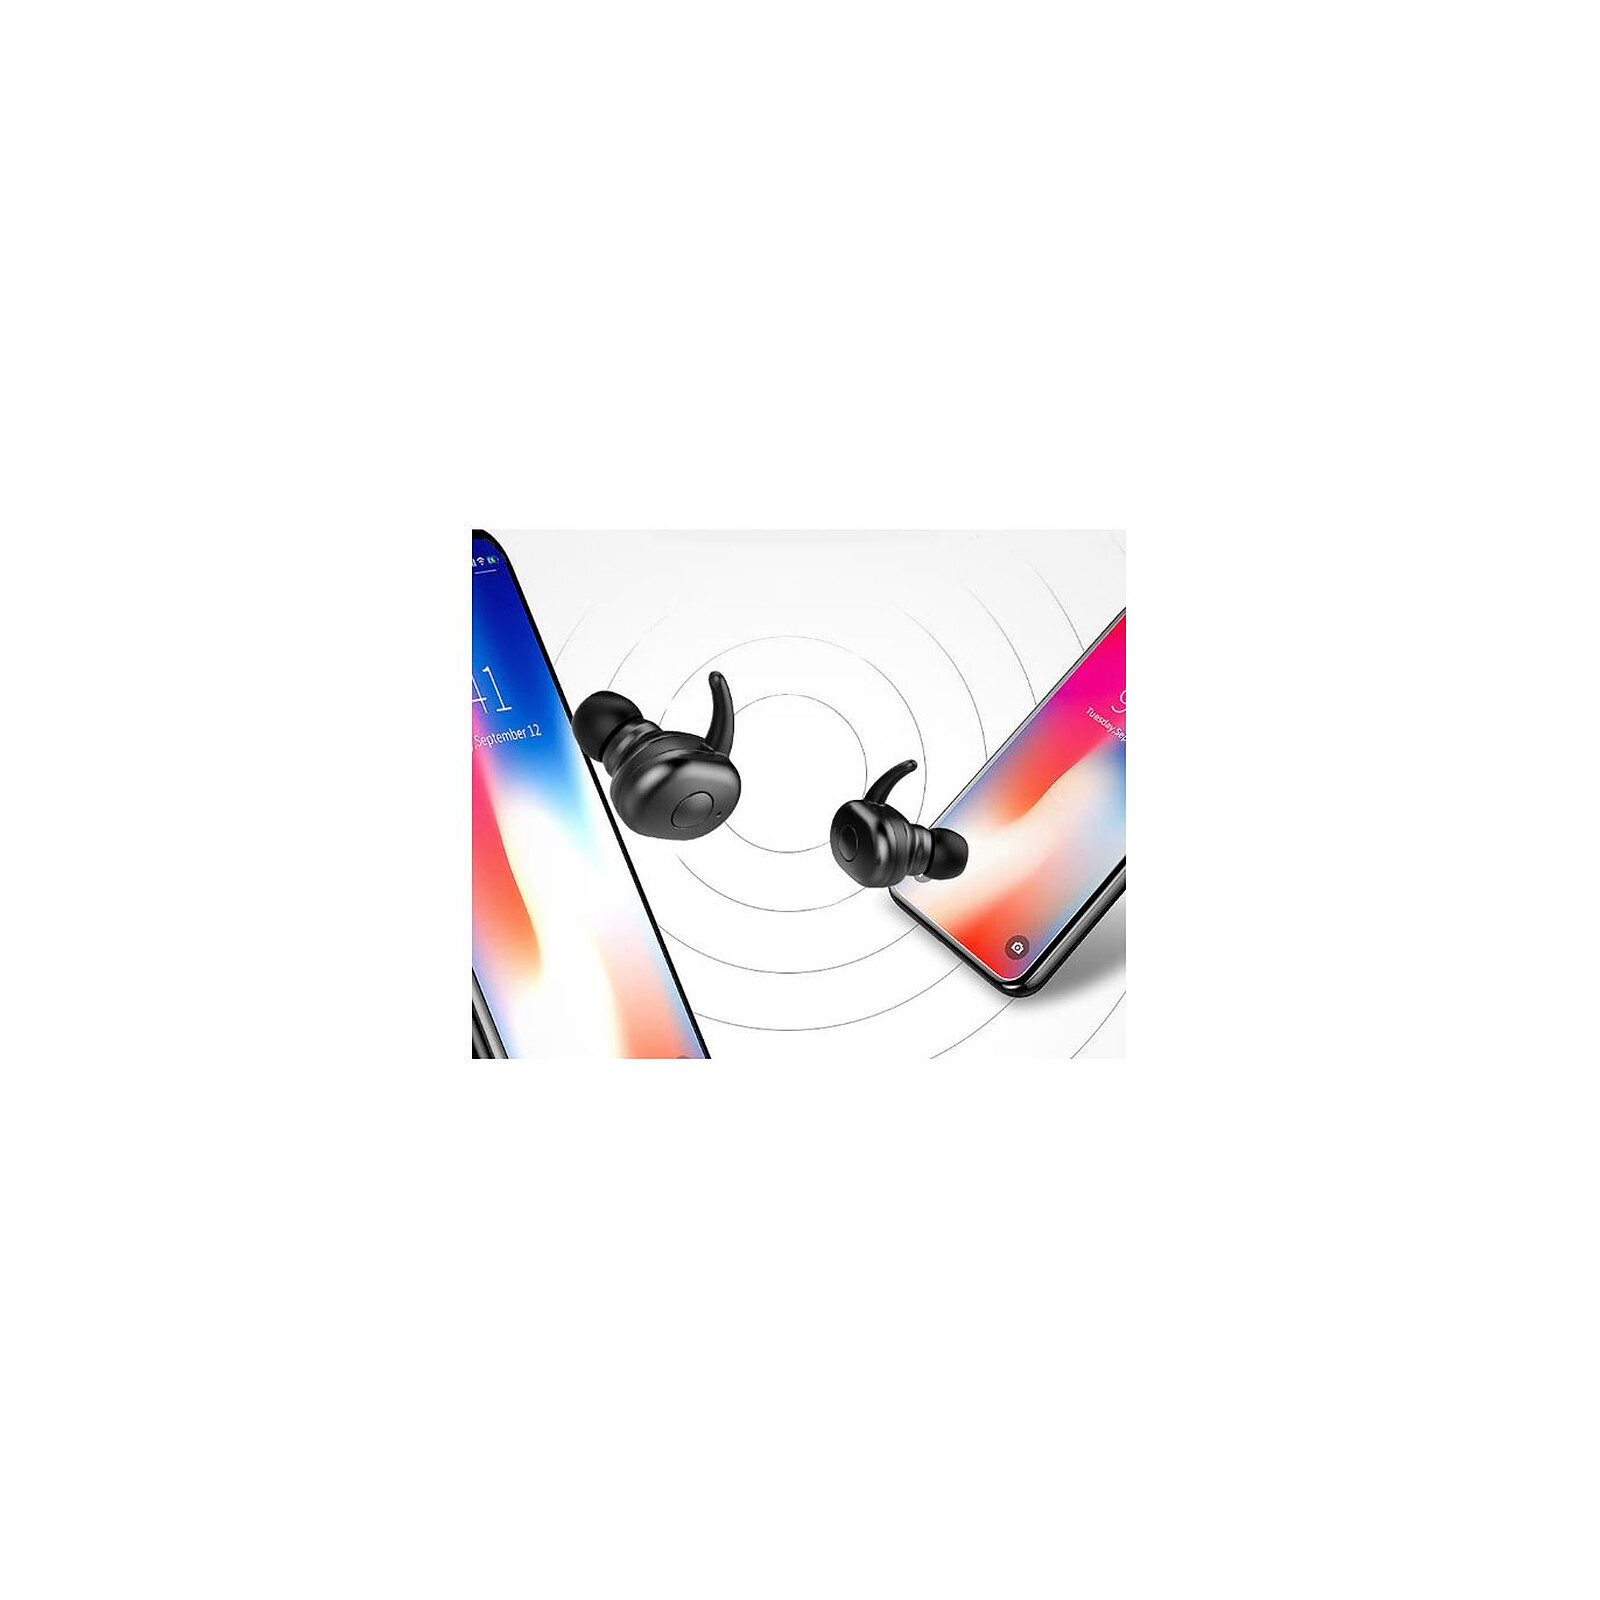 Écouteurs sans fil Bluetooth 5.0 pour iPhone Samsung Android